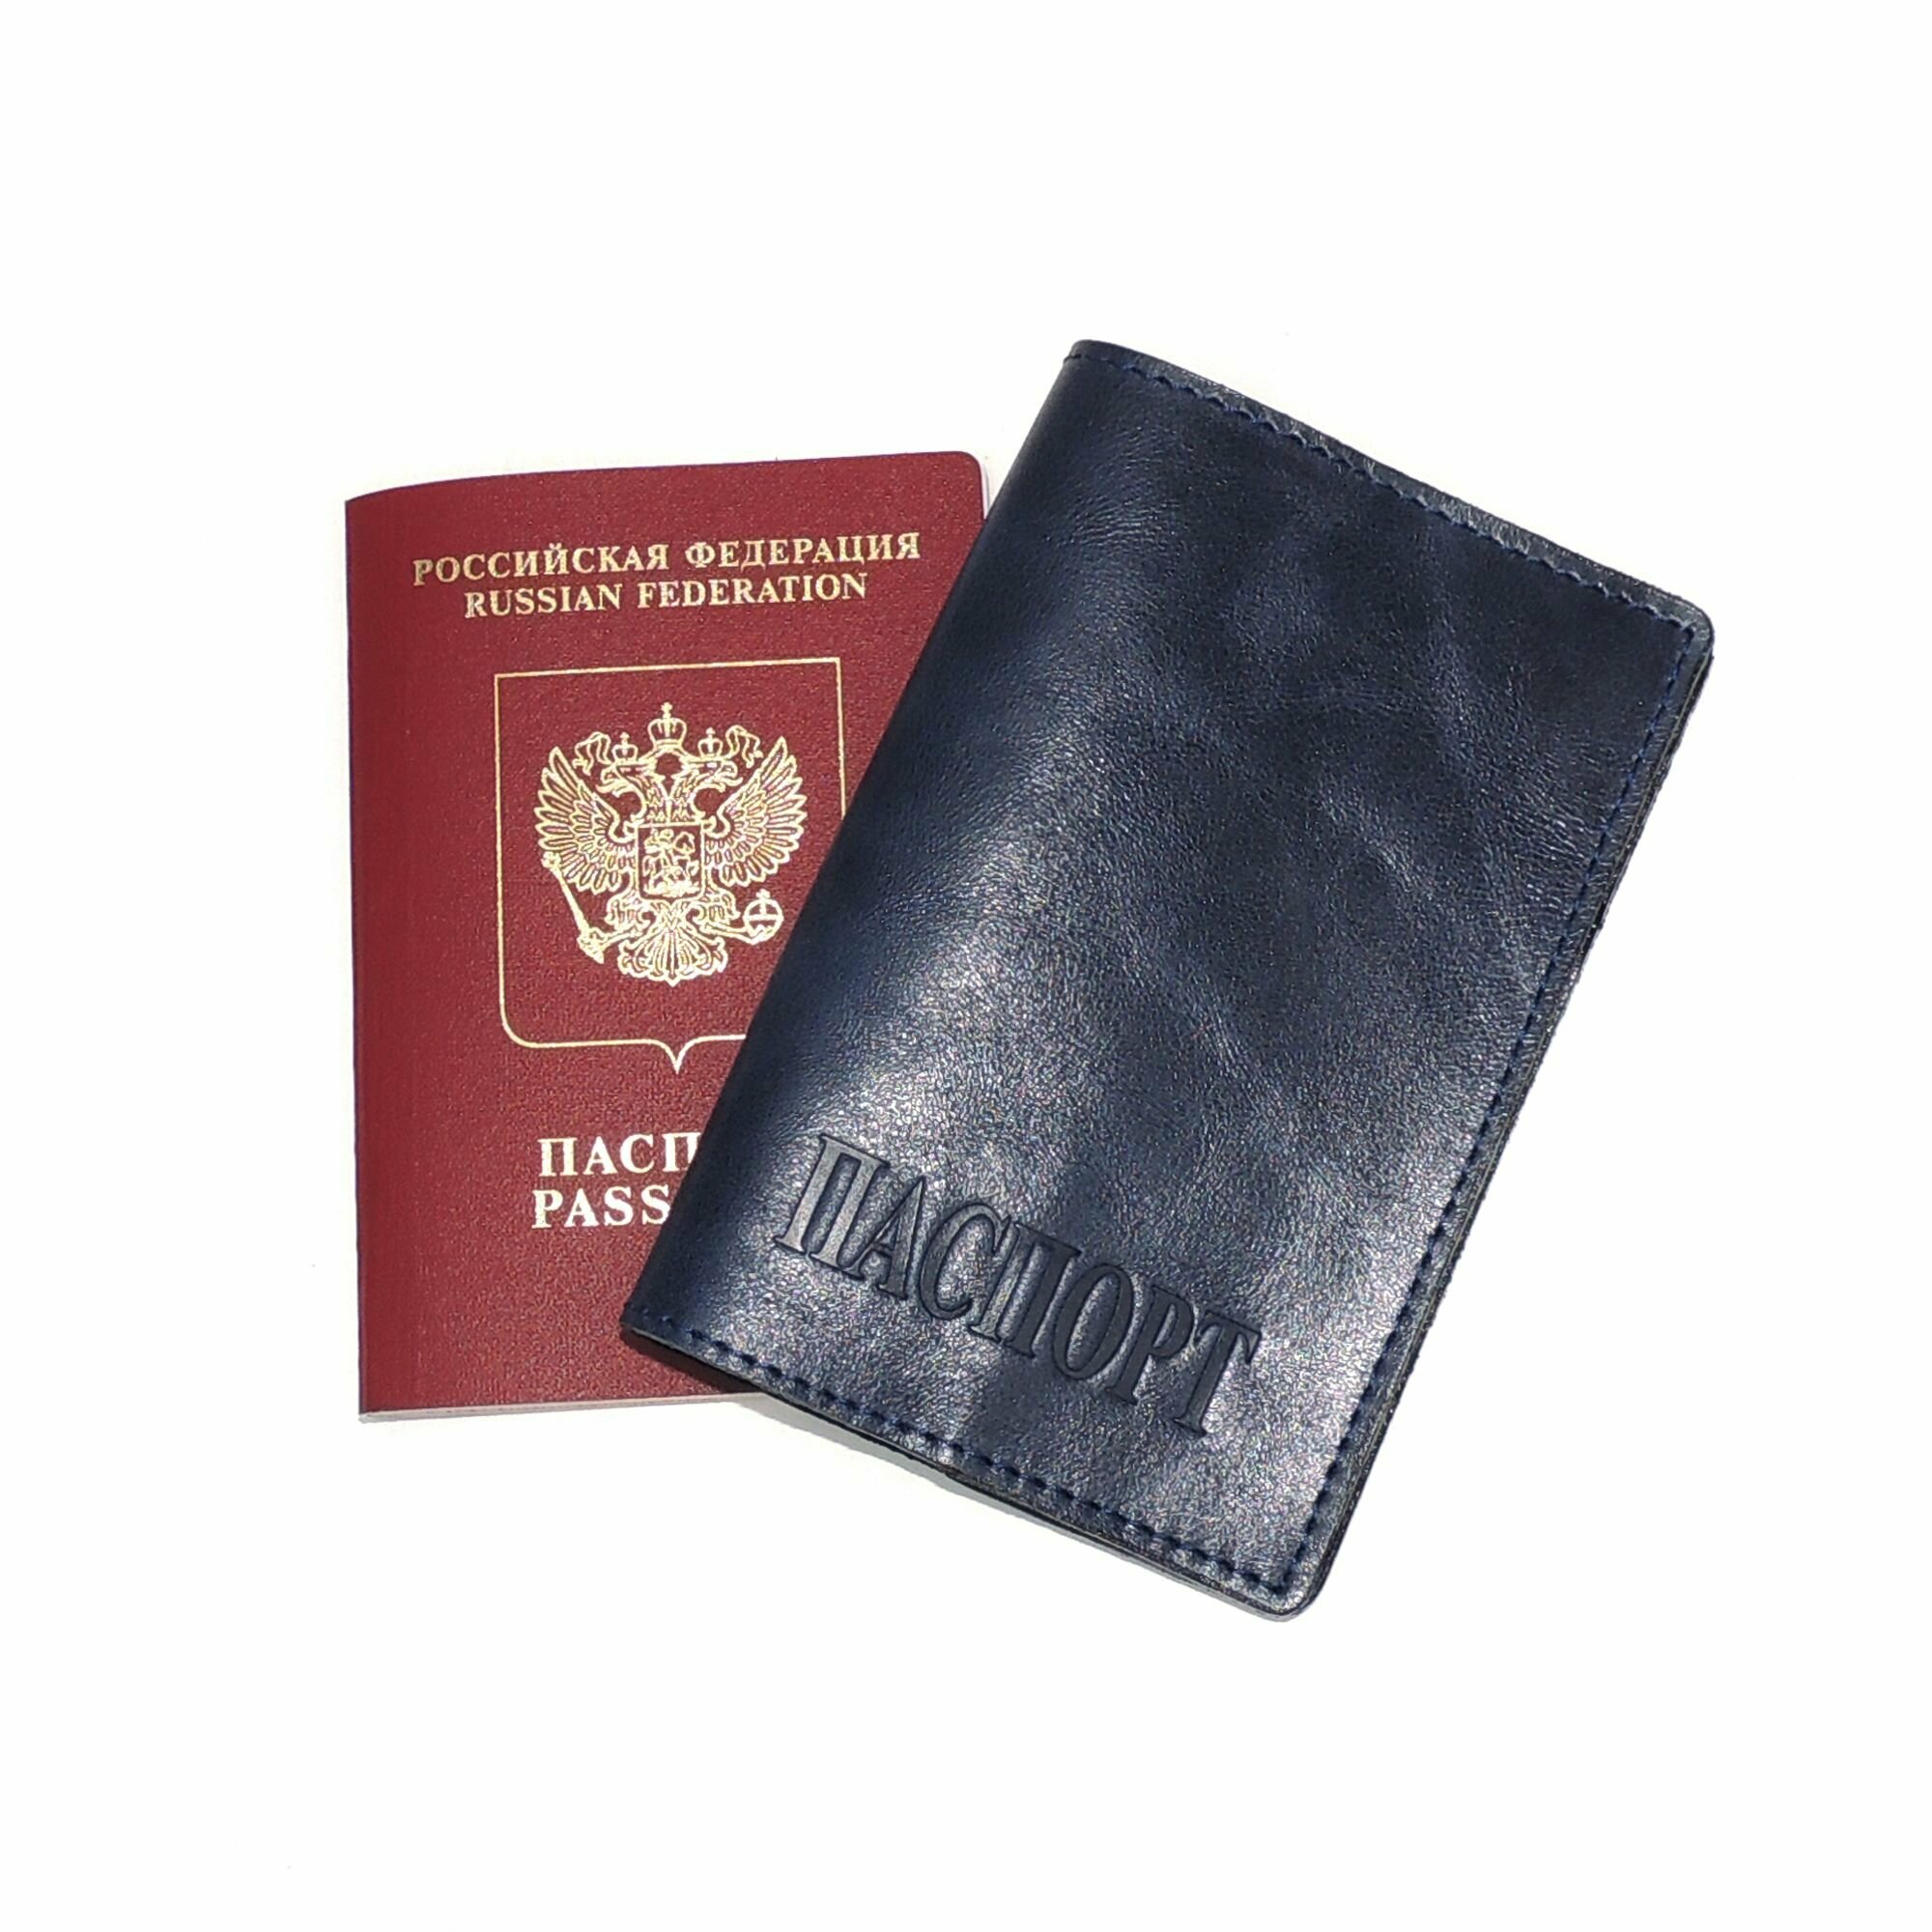 Обложка для паспорта Kalinovskaya